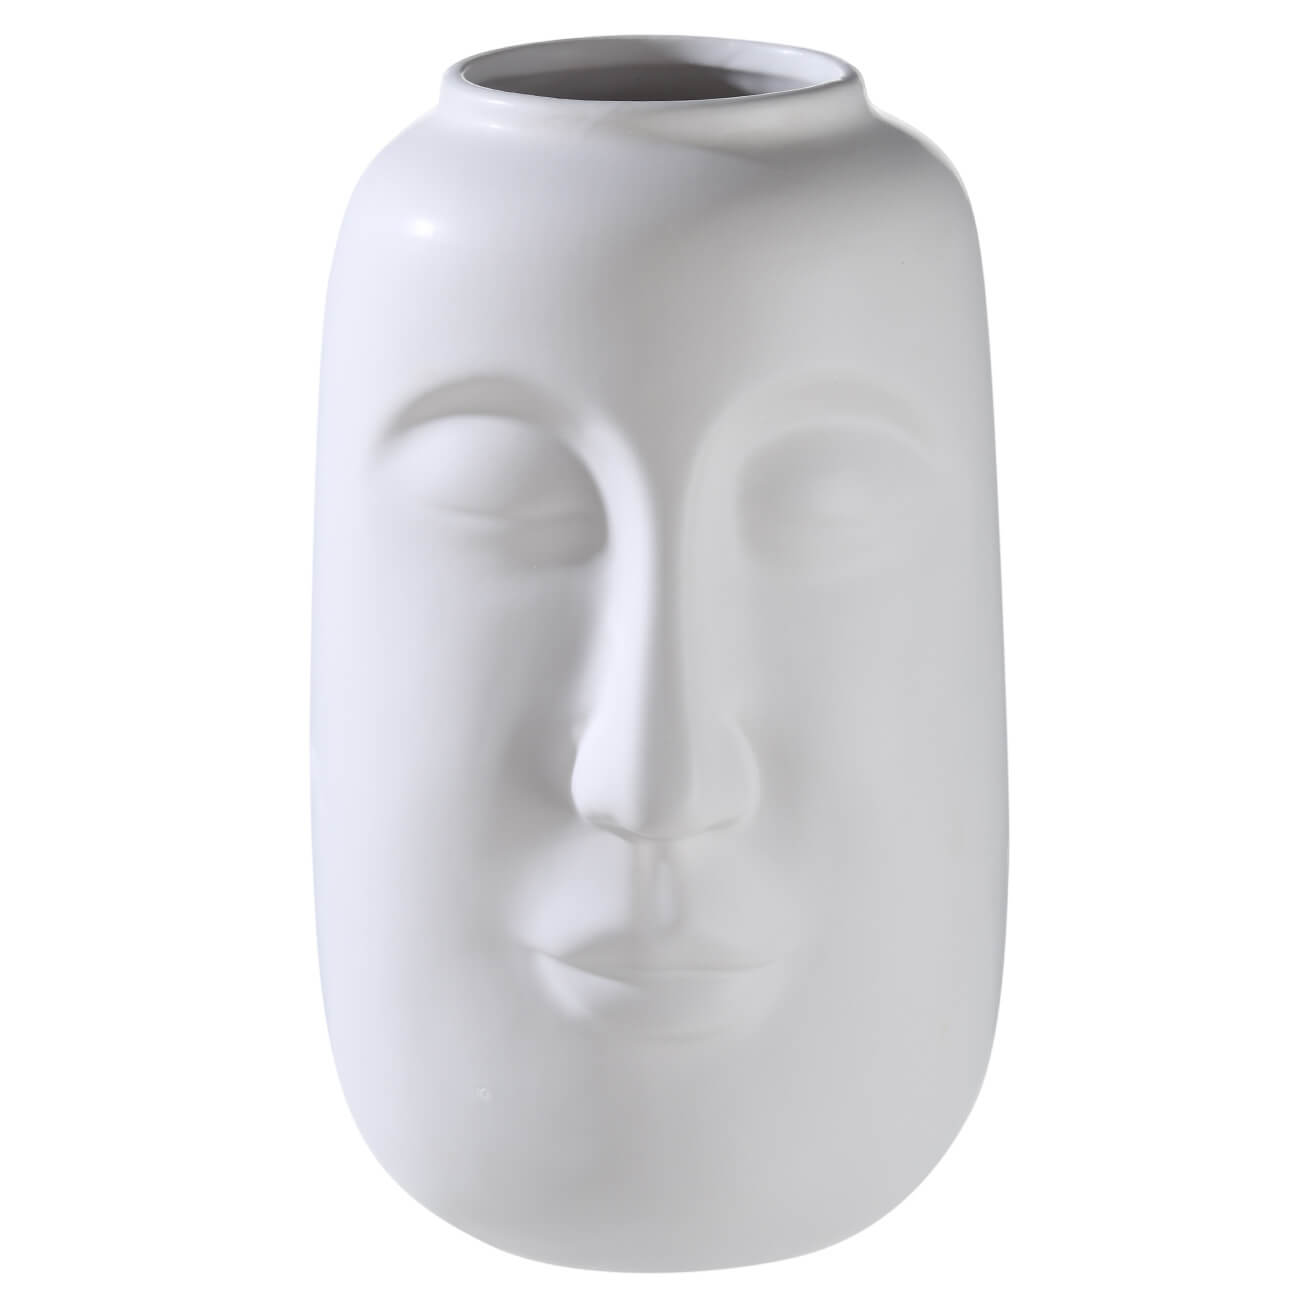 Ваза для цветов, 26 см, декоративная, керамика, белая, Лицо, Face ваза sofia керамика белая 20 см